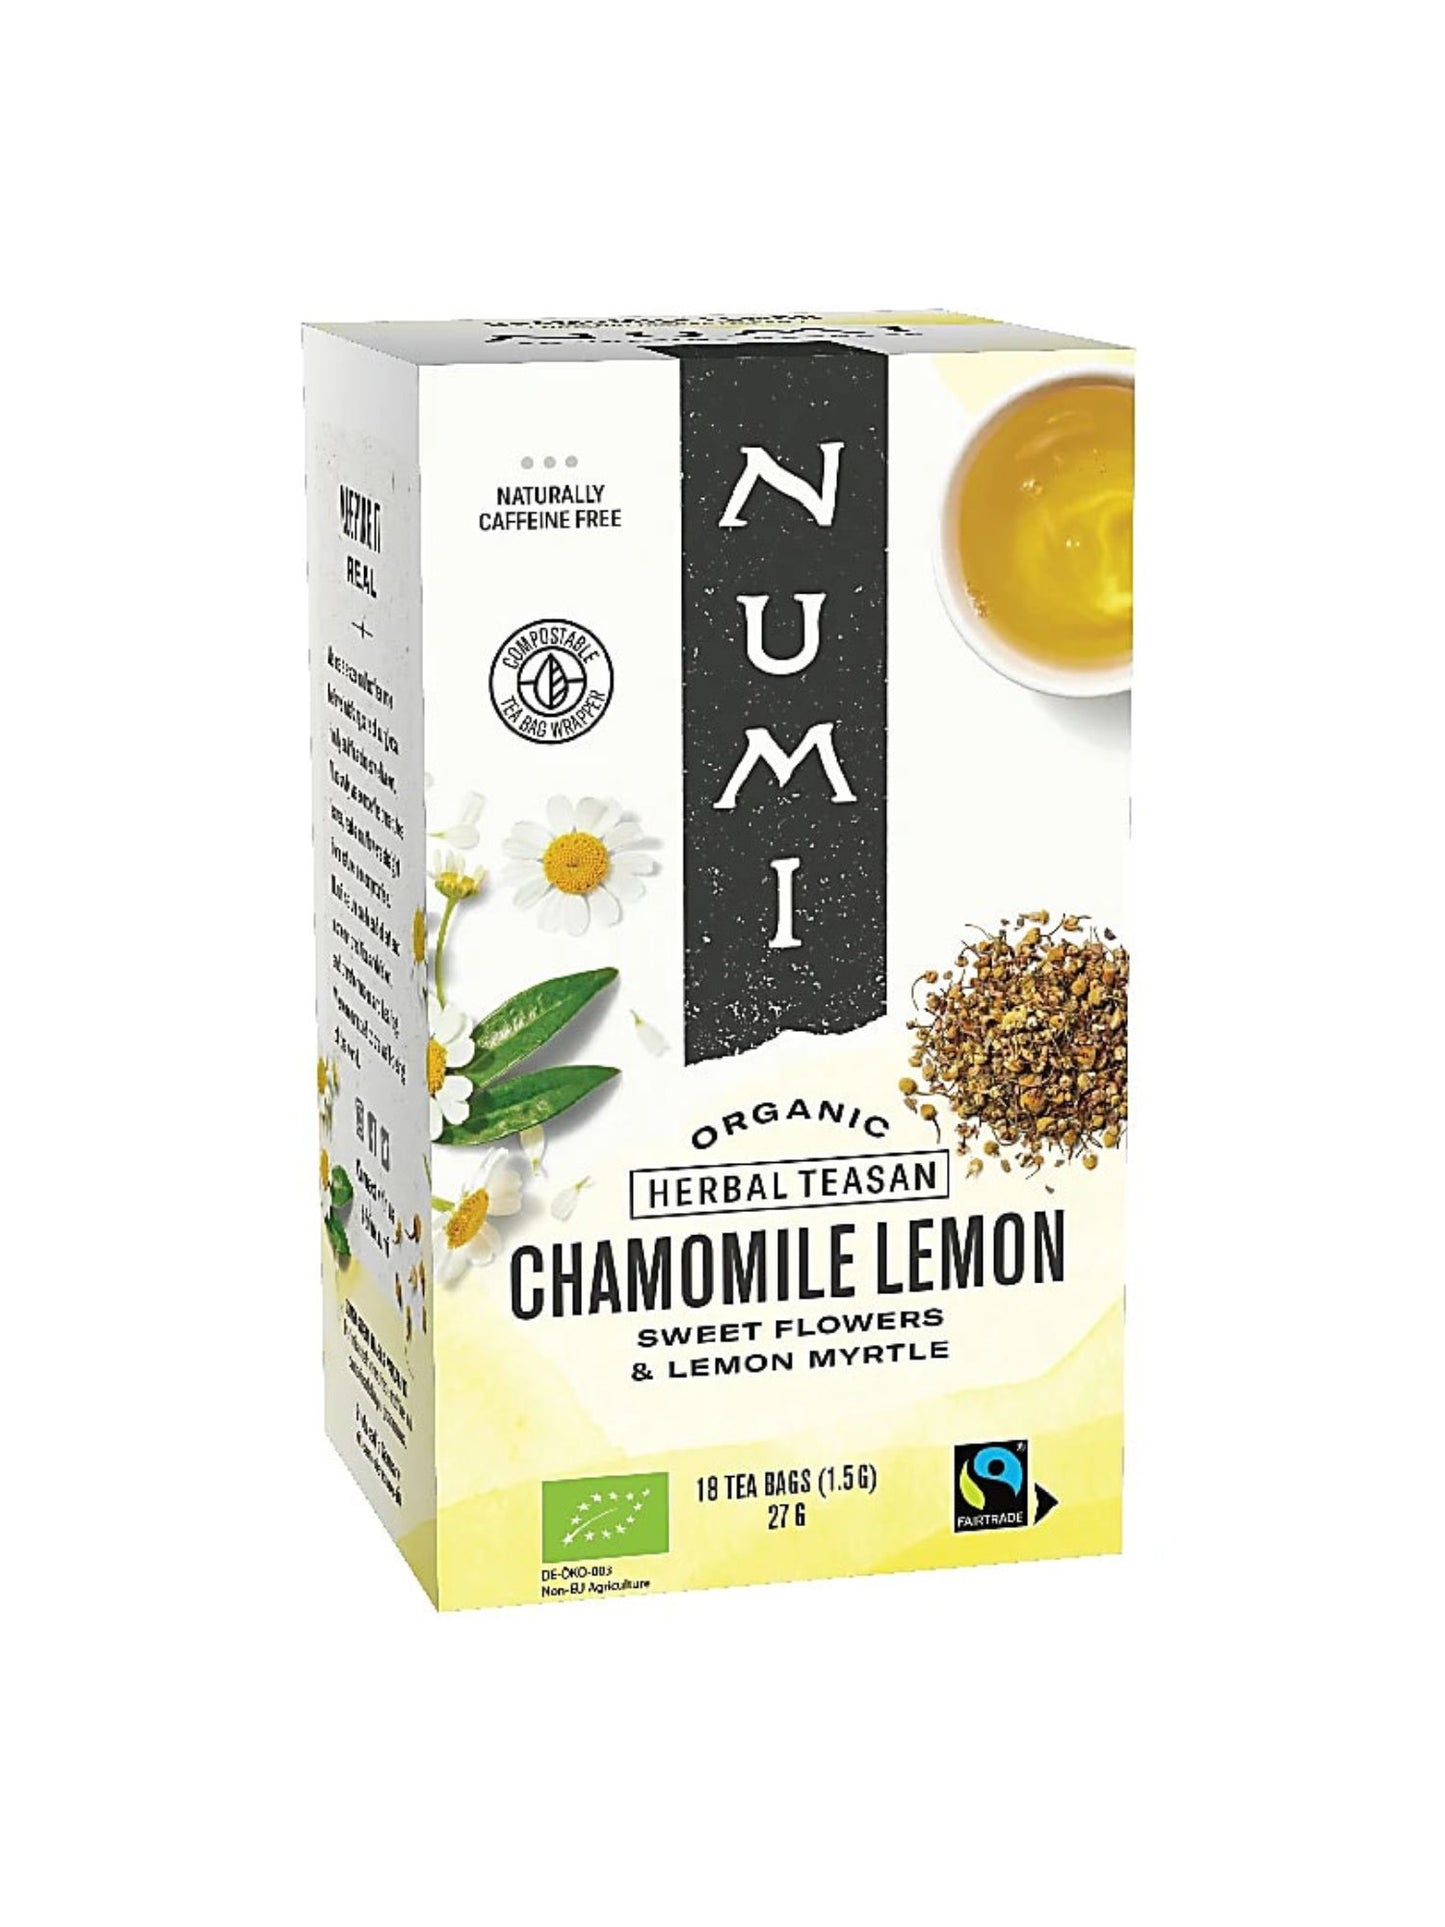 Chamomile Lemon Organic Herbal Tea Numi